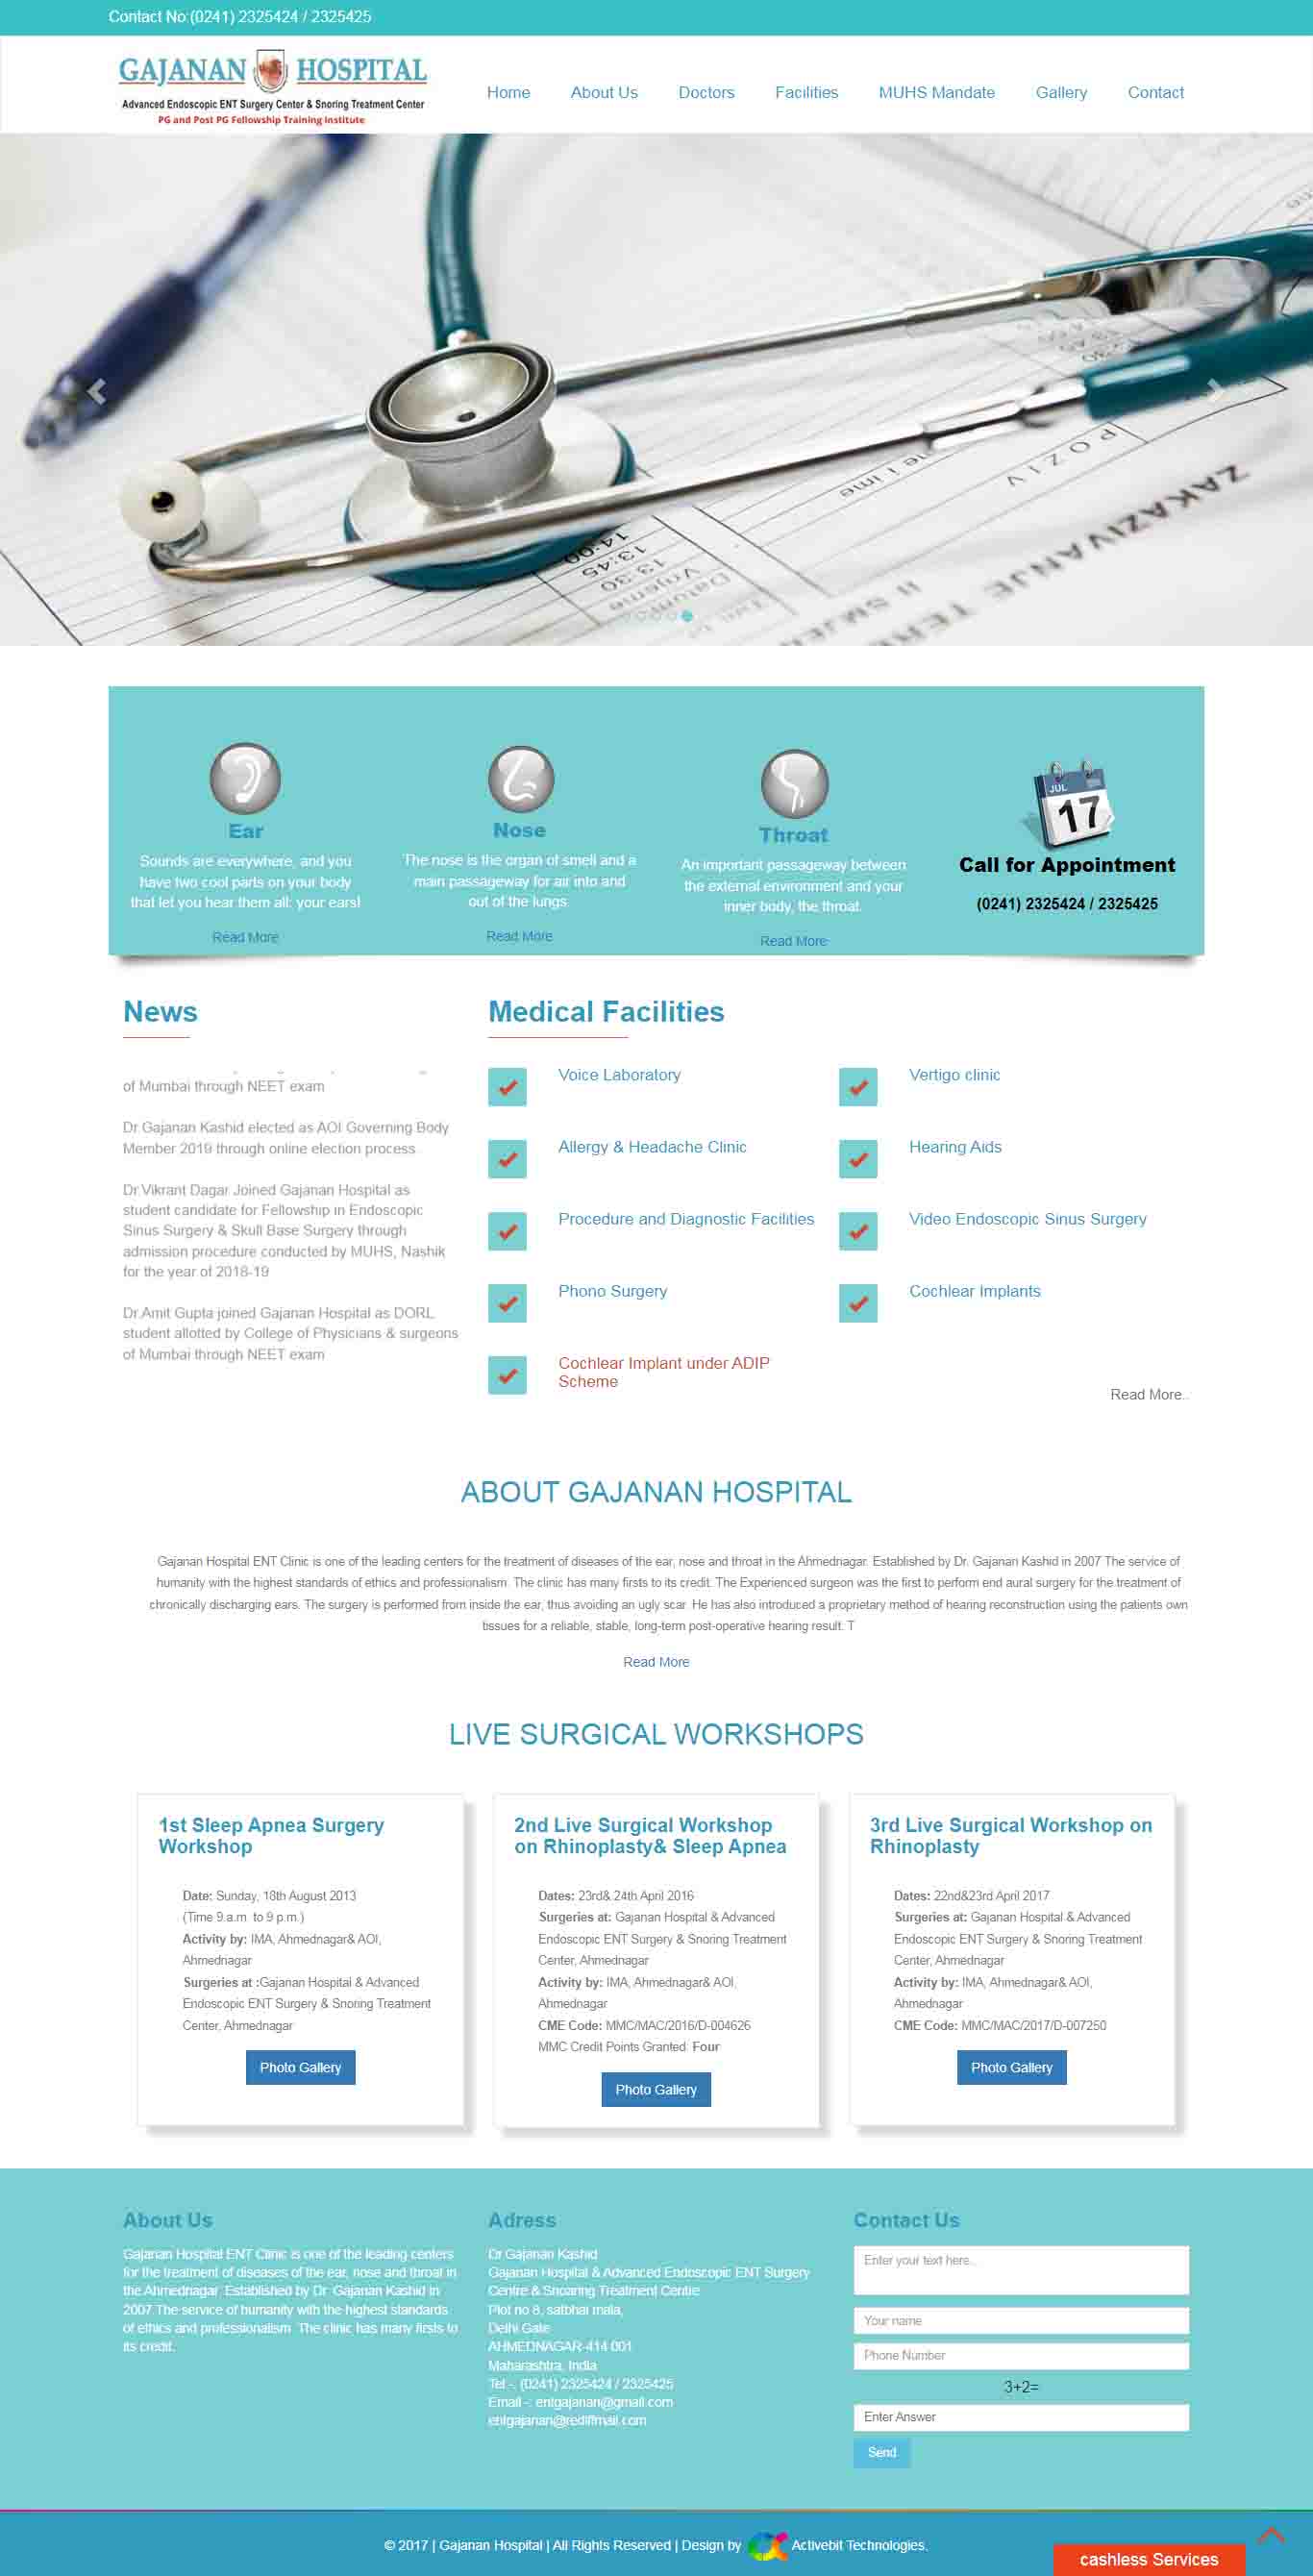  Gajanan Hospital website design services